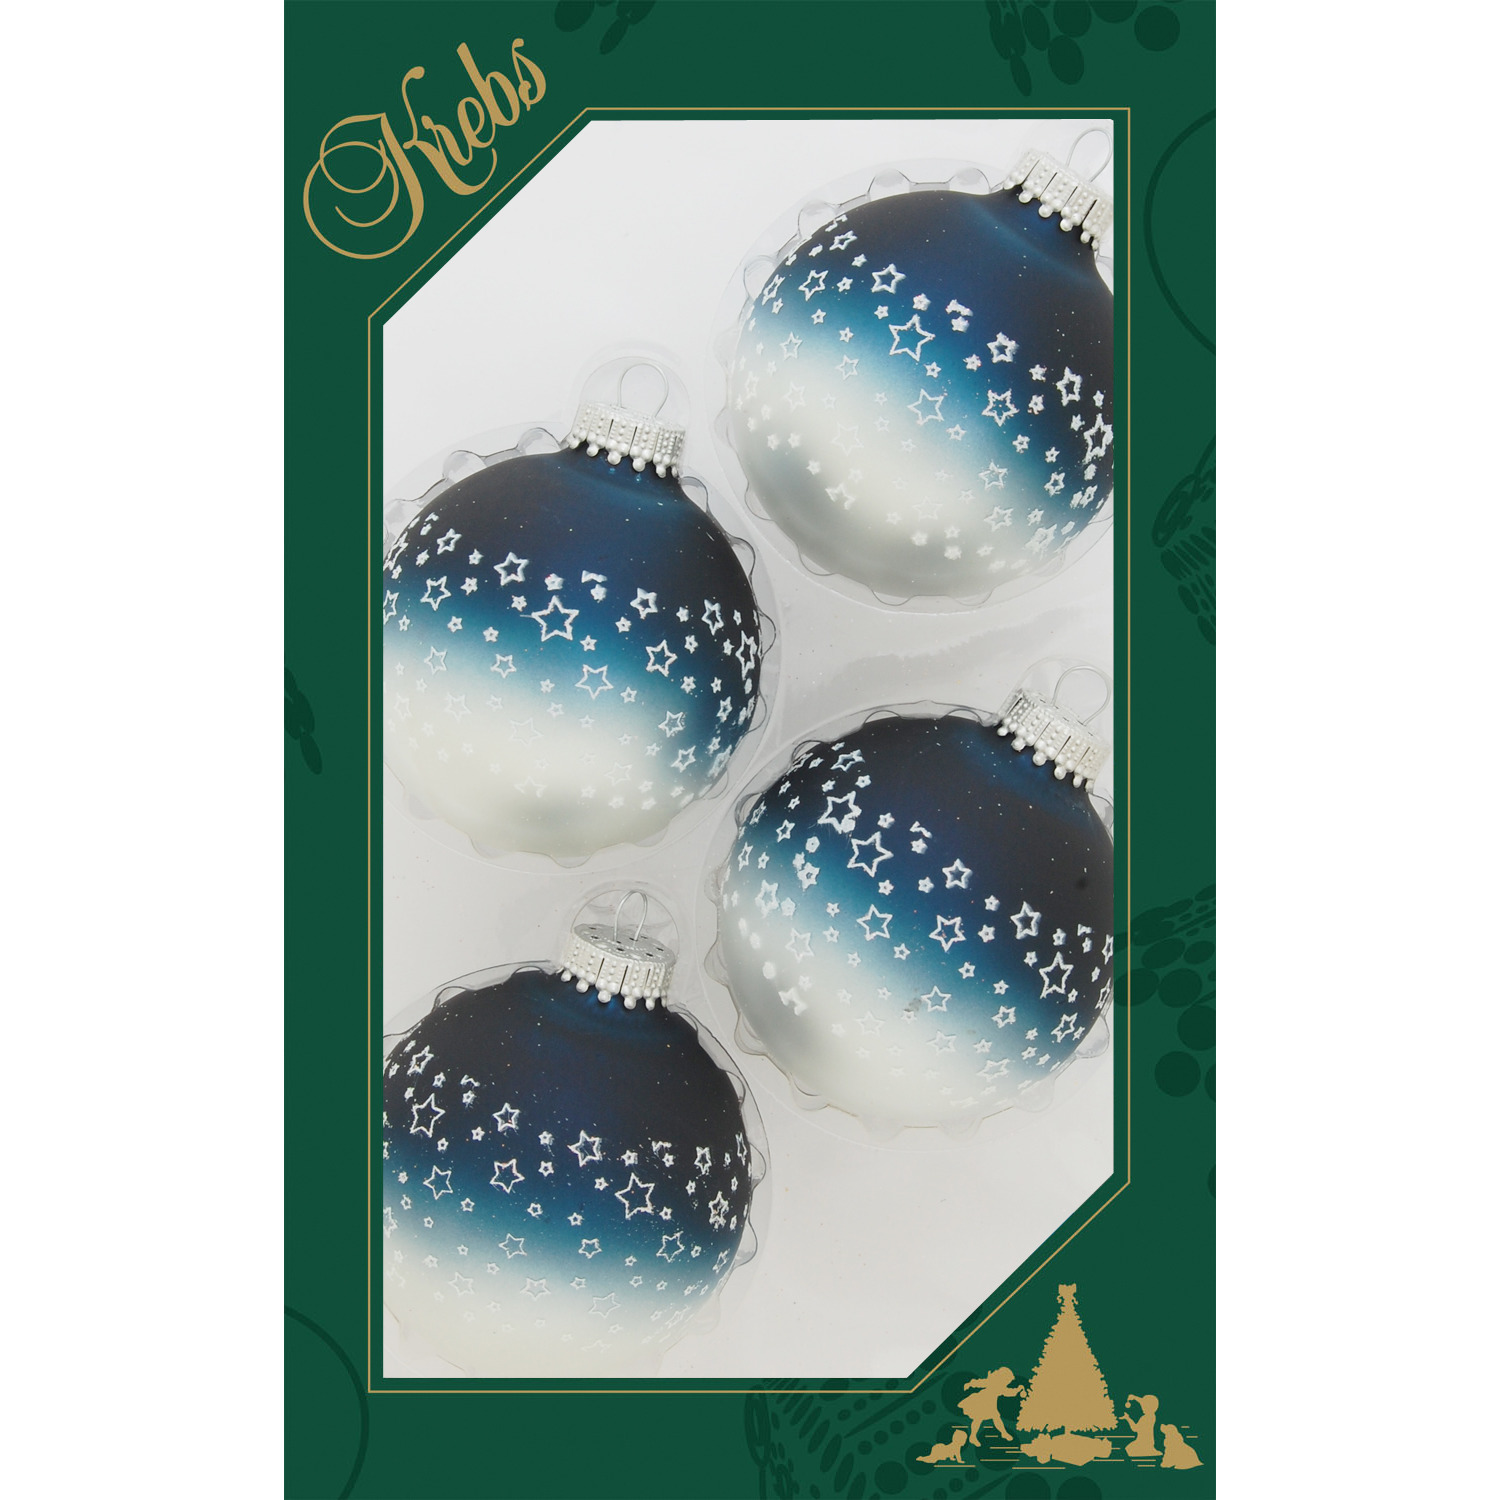 8x stuks luxe glazen kerstballen 7 cm blauw-wit met sterren